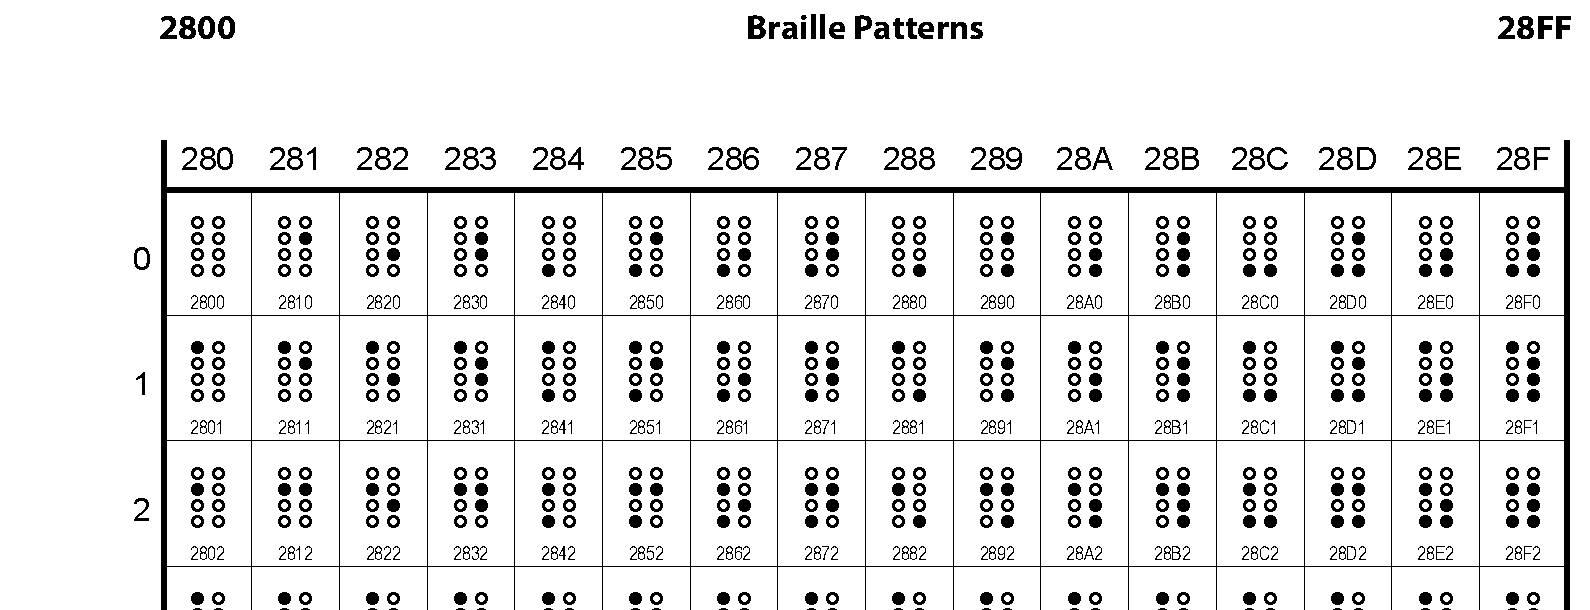 Unicode - Braille Patterns